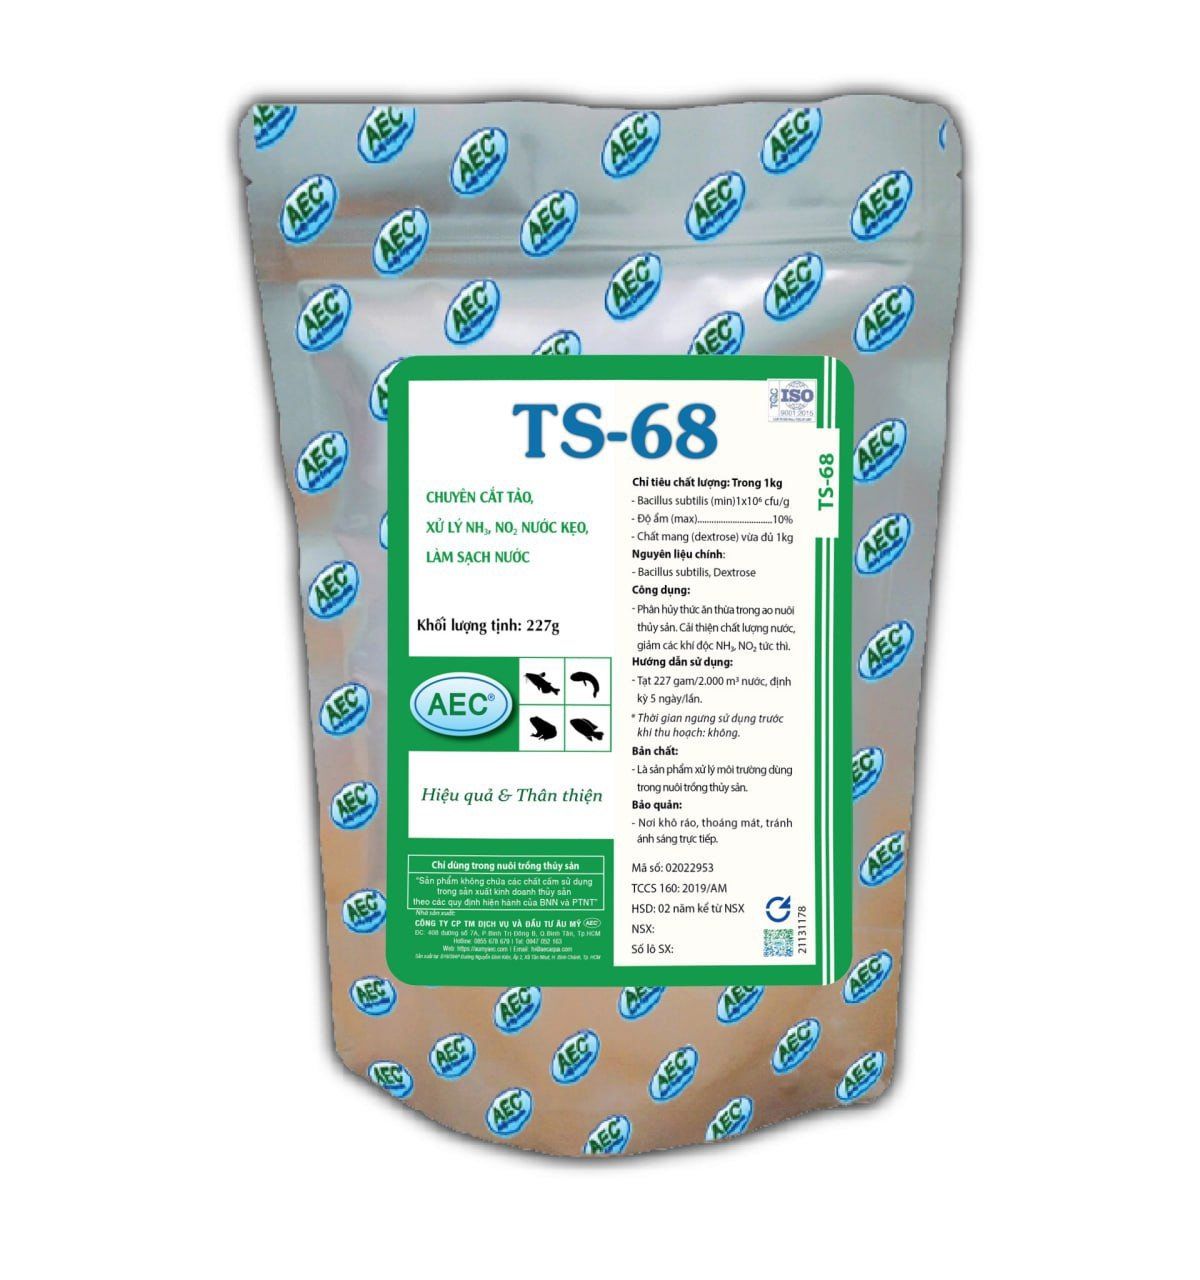  TS - 68 - Chuyên cắt tảo, xử lý no2, nh3, nước kẹo, làm sạch nước 